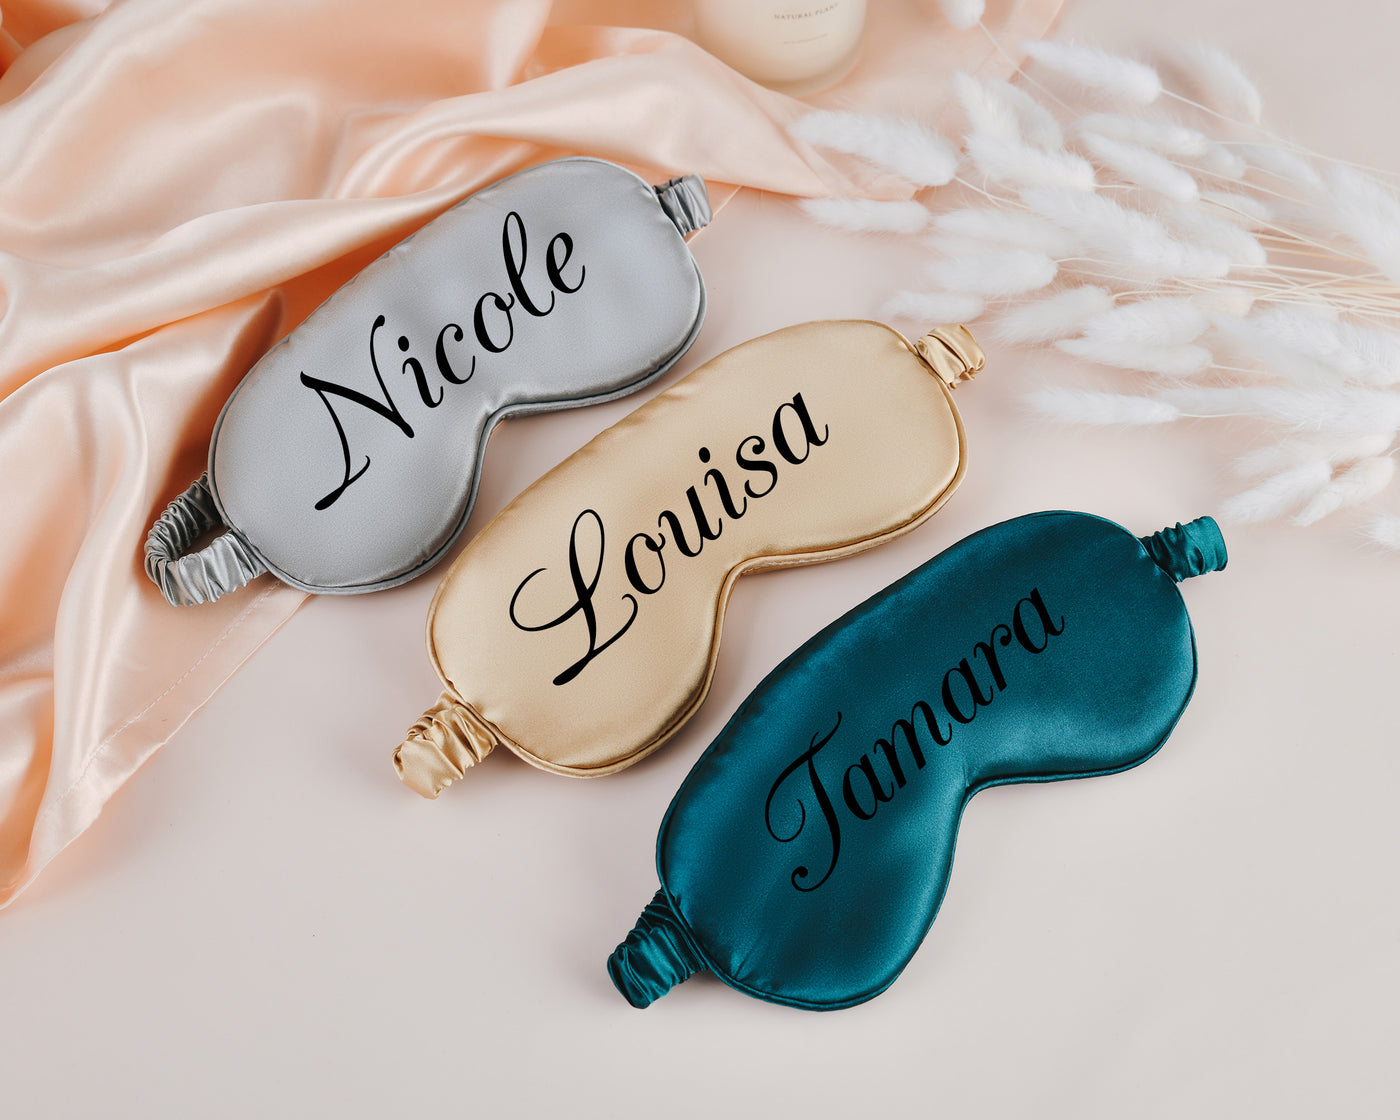 Customized Eye Masks Personalized Sleeping Masks Elegant Eye Mask Set for the Perfect Bridesmaid Proposal or Wedding Gift